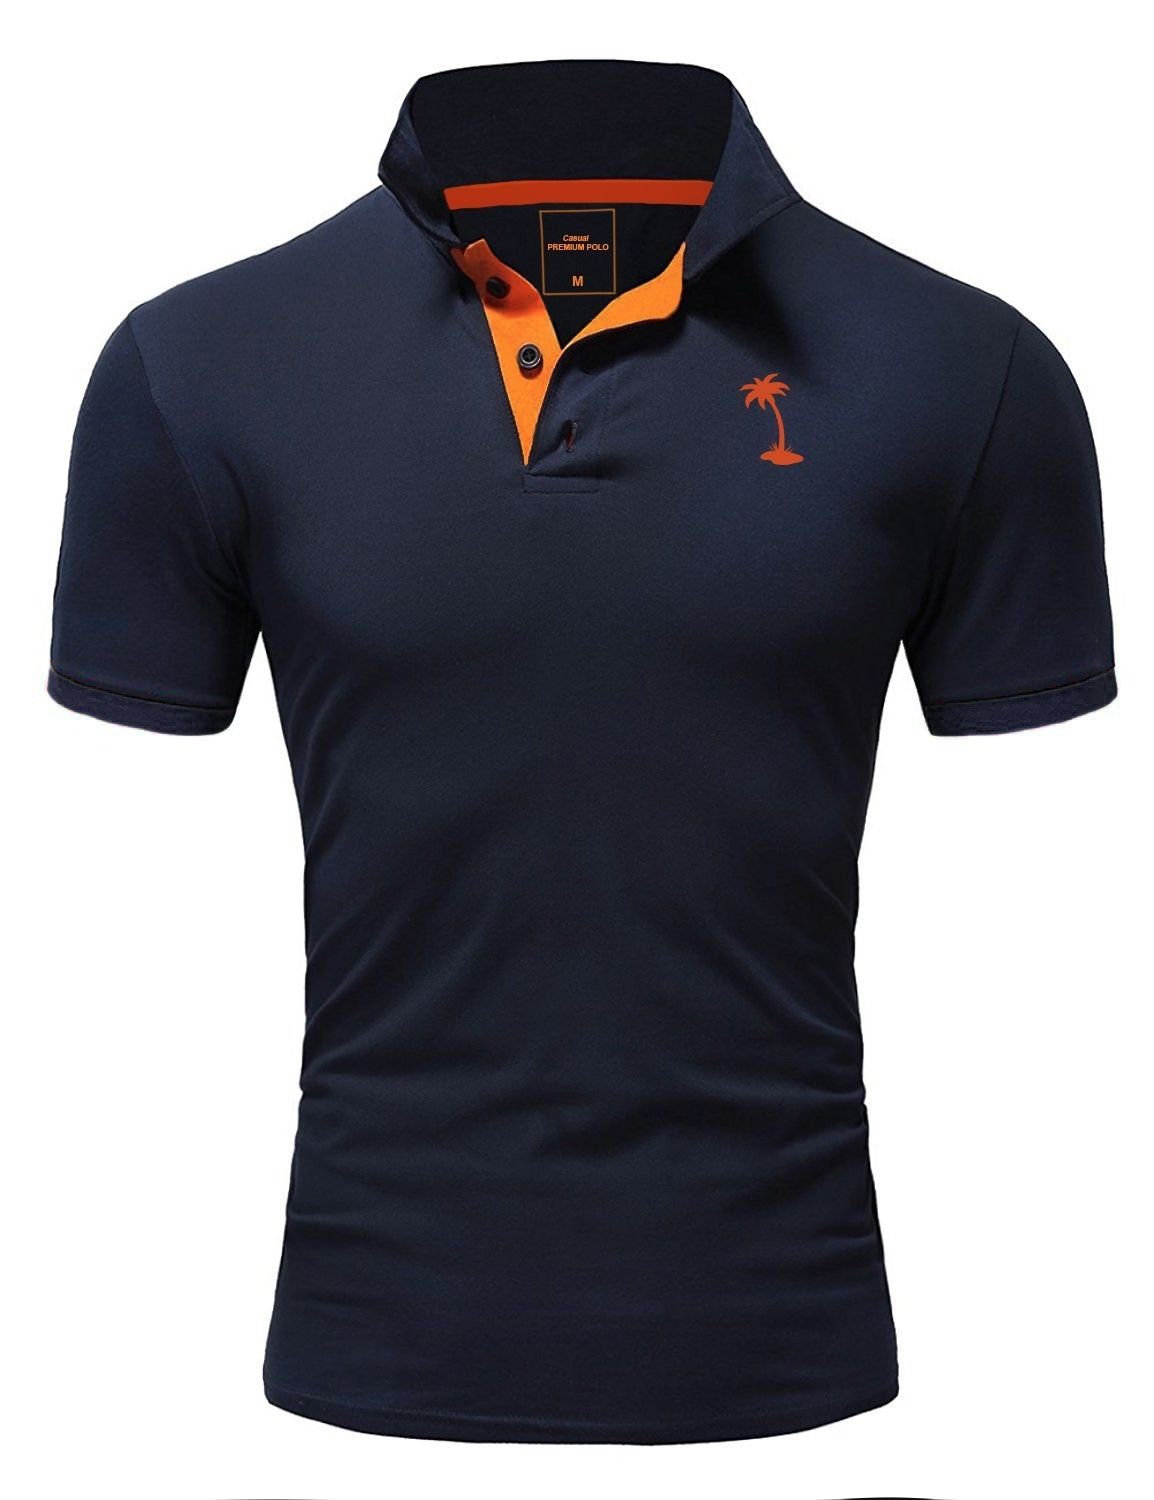 kontrastfarbigen Details mit PALMSON dunkelblau-orange Poloshirt behype